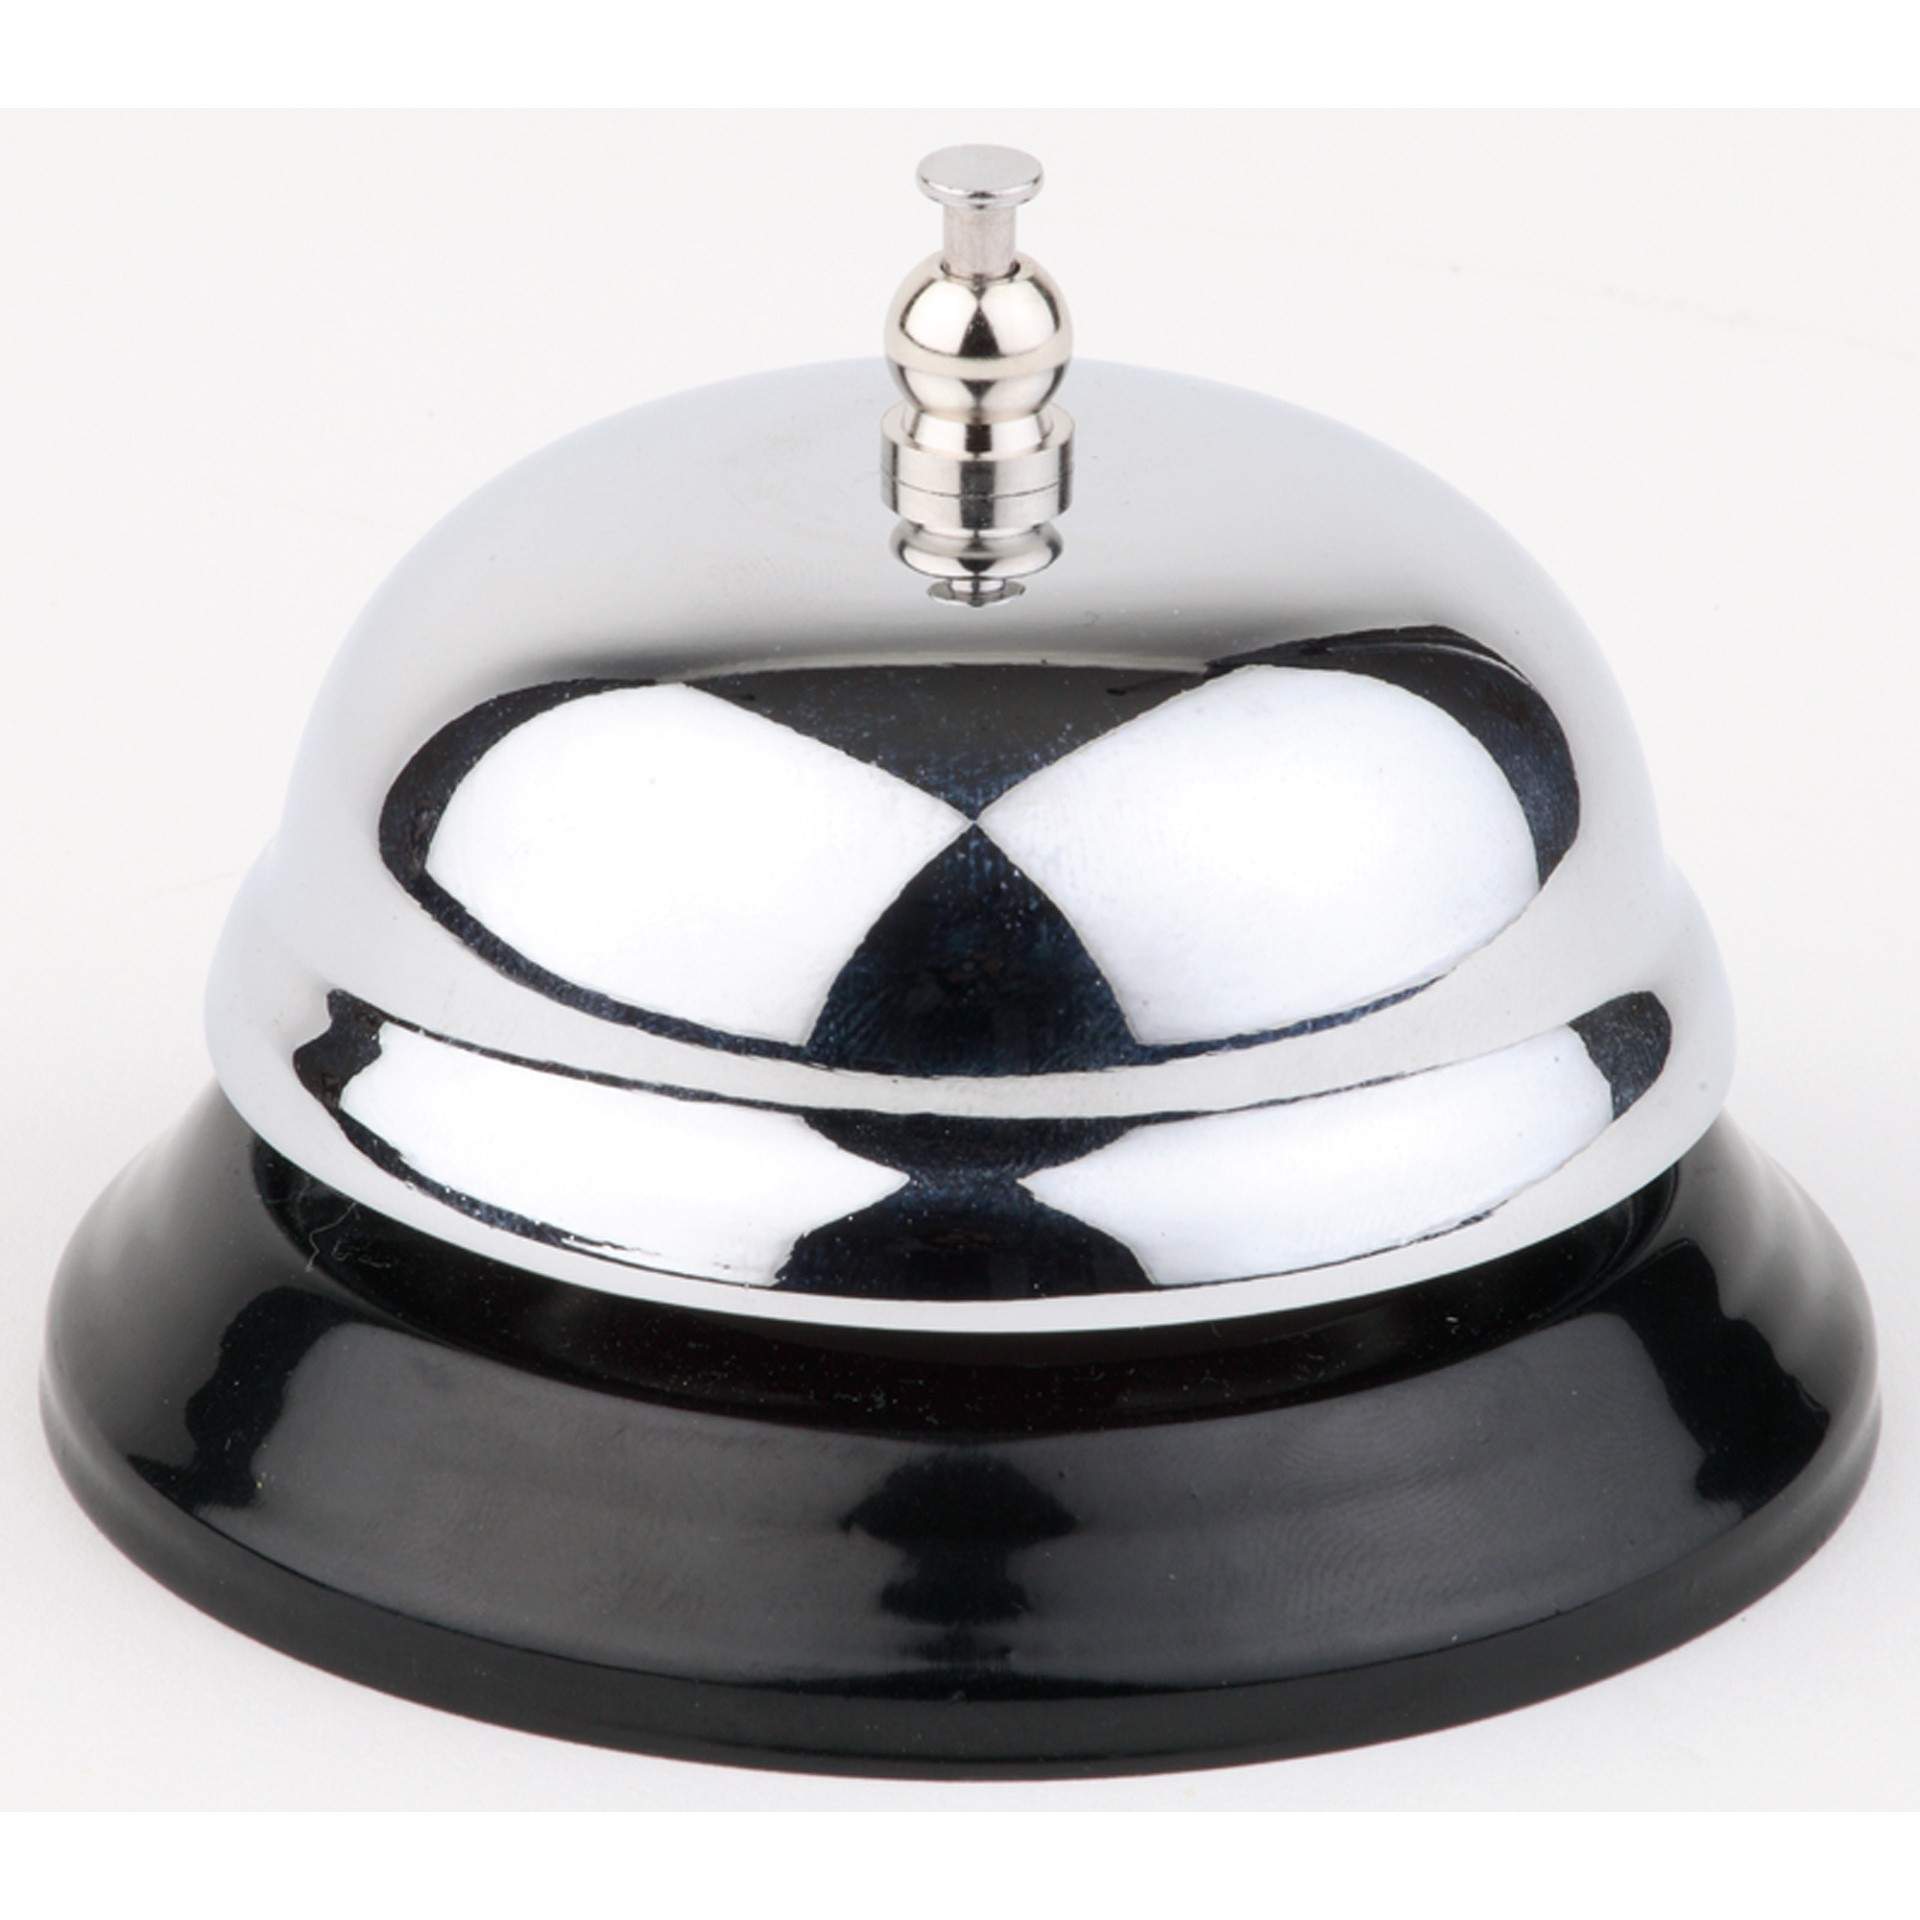 Rezeptionsglocke - schwarzer Metallfuß - schwarz - rund - Abm. 6,0 cm - Ø 8,5 cm - Metall, verchromt - 71400-B